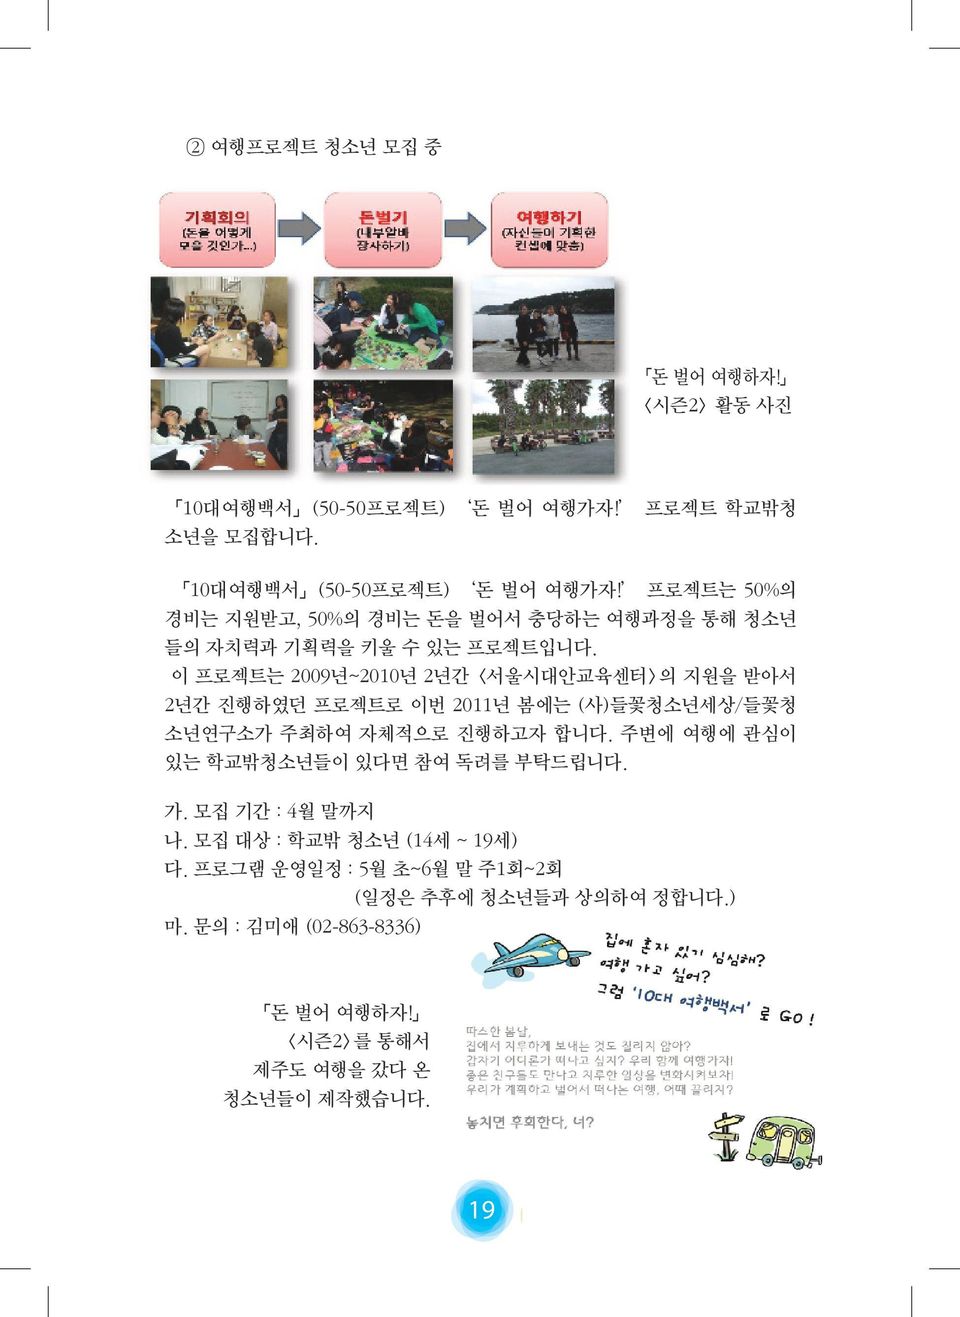 이 프로젝트는 2009년~2010년 2년간 <서울시대안교육센터>의 지원을 받아서 2년간 진행하였던 프로젝트로 이번 2011년 봄에는 (사)들꽃청소년세상/들꽃청 소년연구소가 주최하여 자체적으로 진행하고자 합니다.